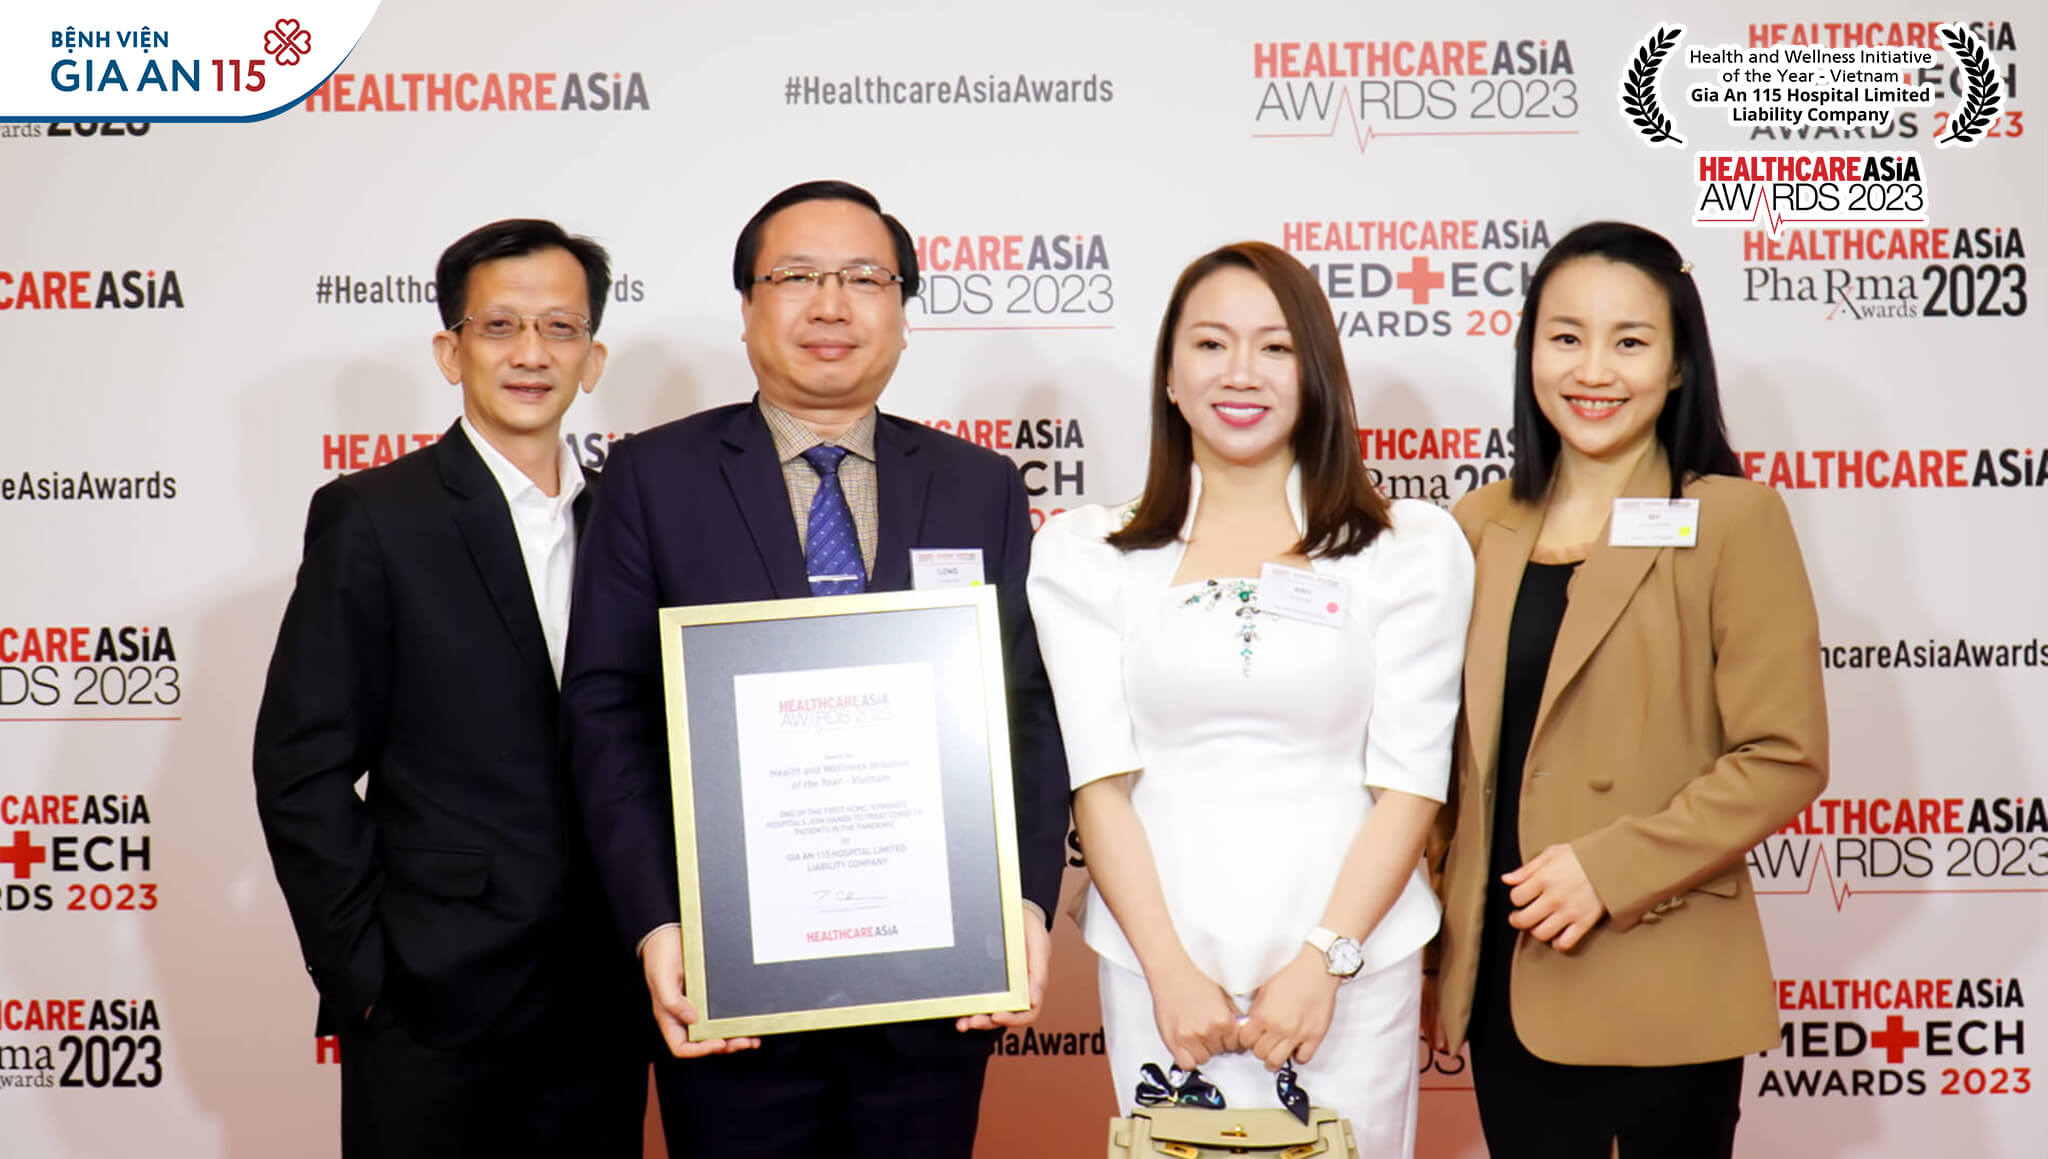 Bệnh viện Gia An 115 đạt giải sáng kiến về sức khỏe của năm tại Healthcare Asia Awards 2023